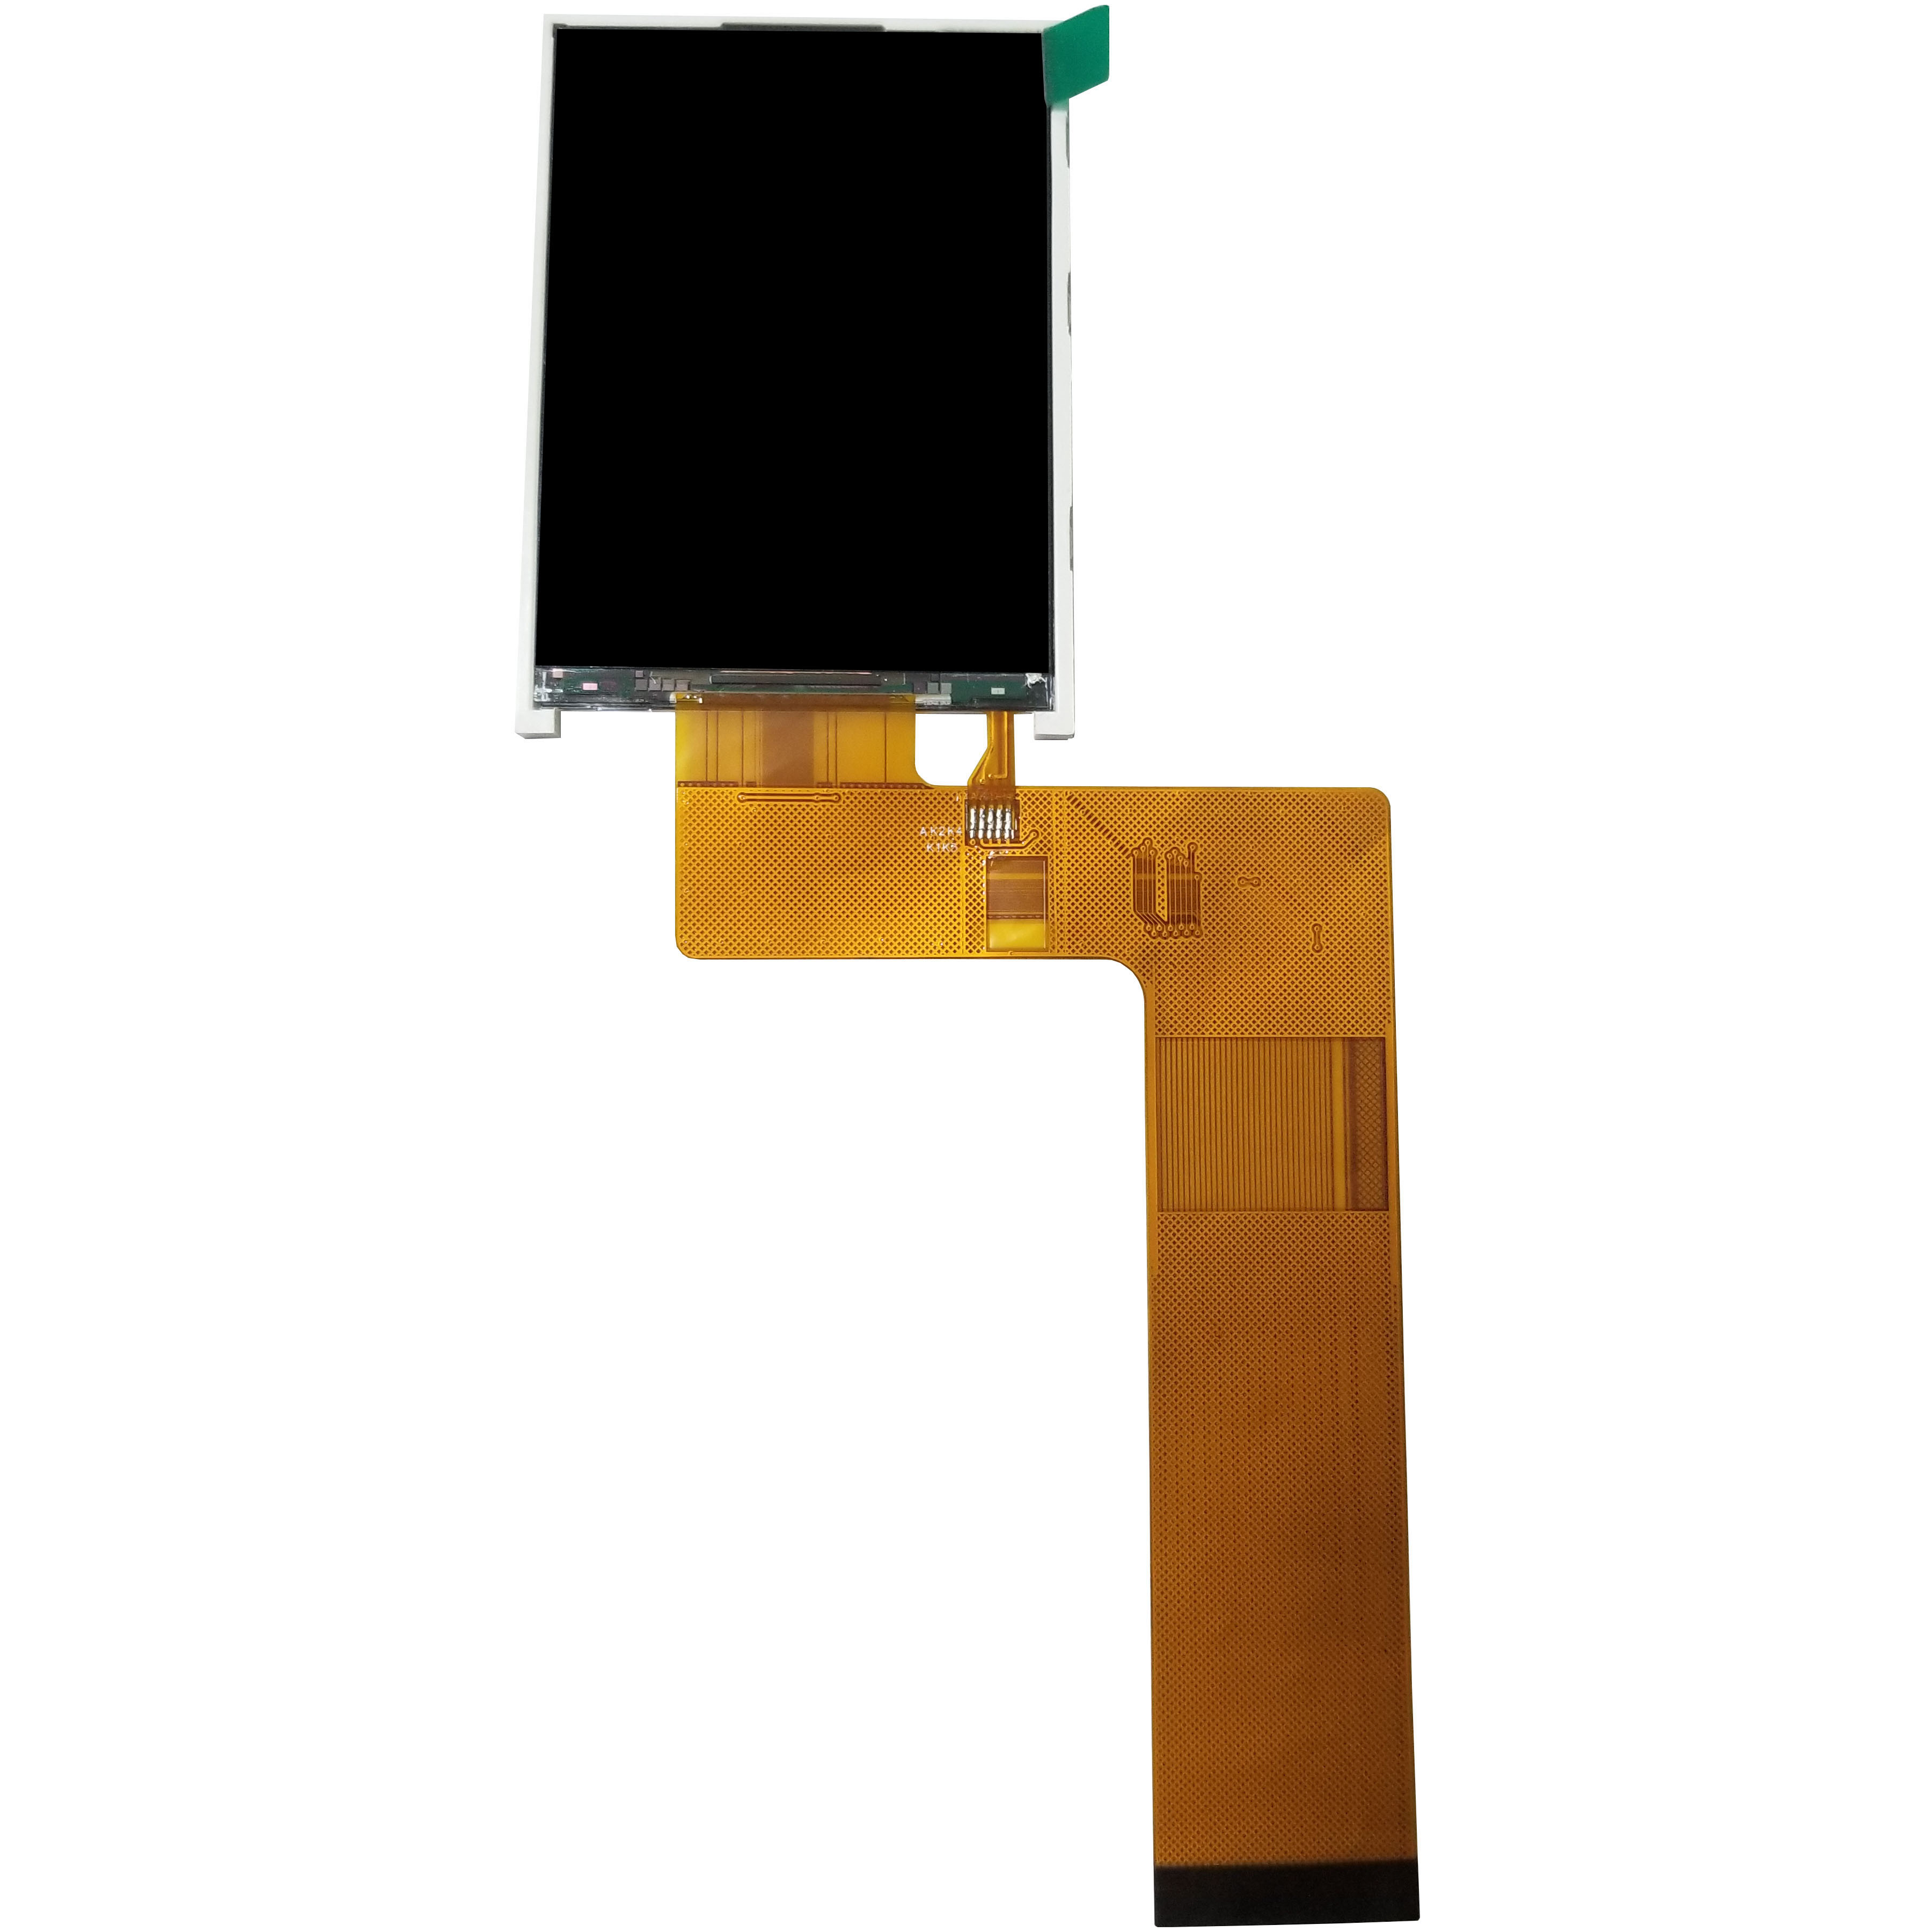 Επιδείξεις ίντσας TFT LCD ST7789V 2,8